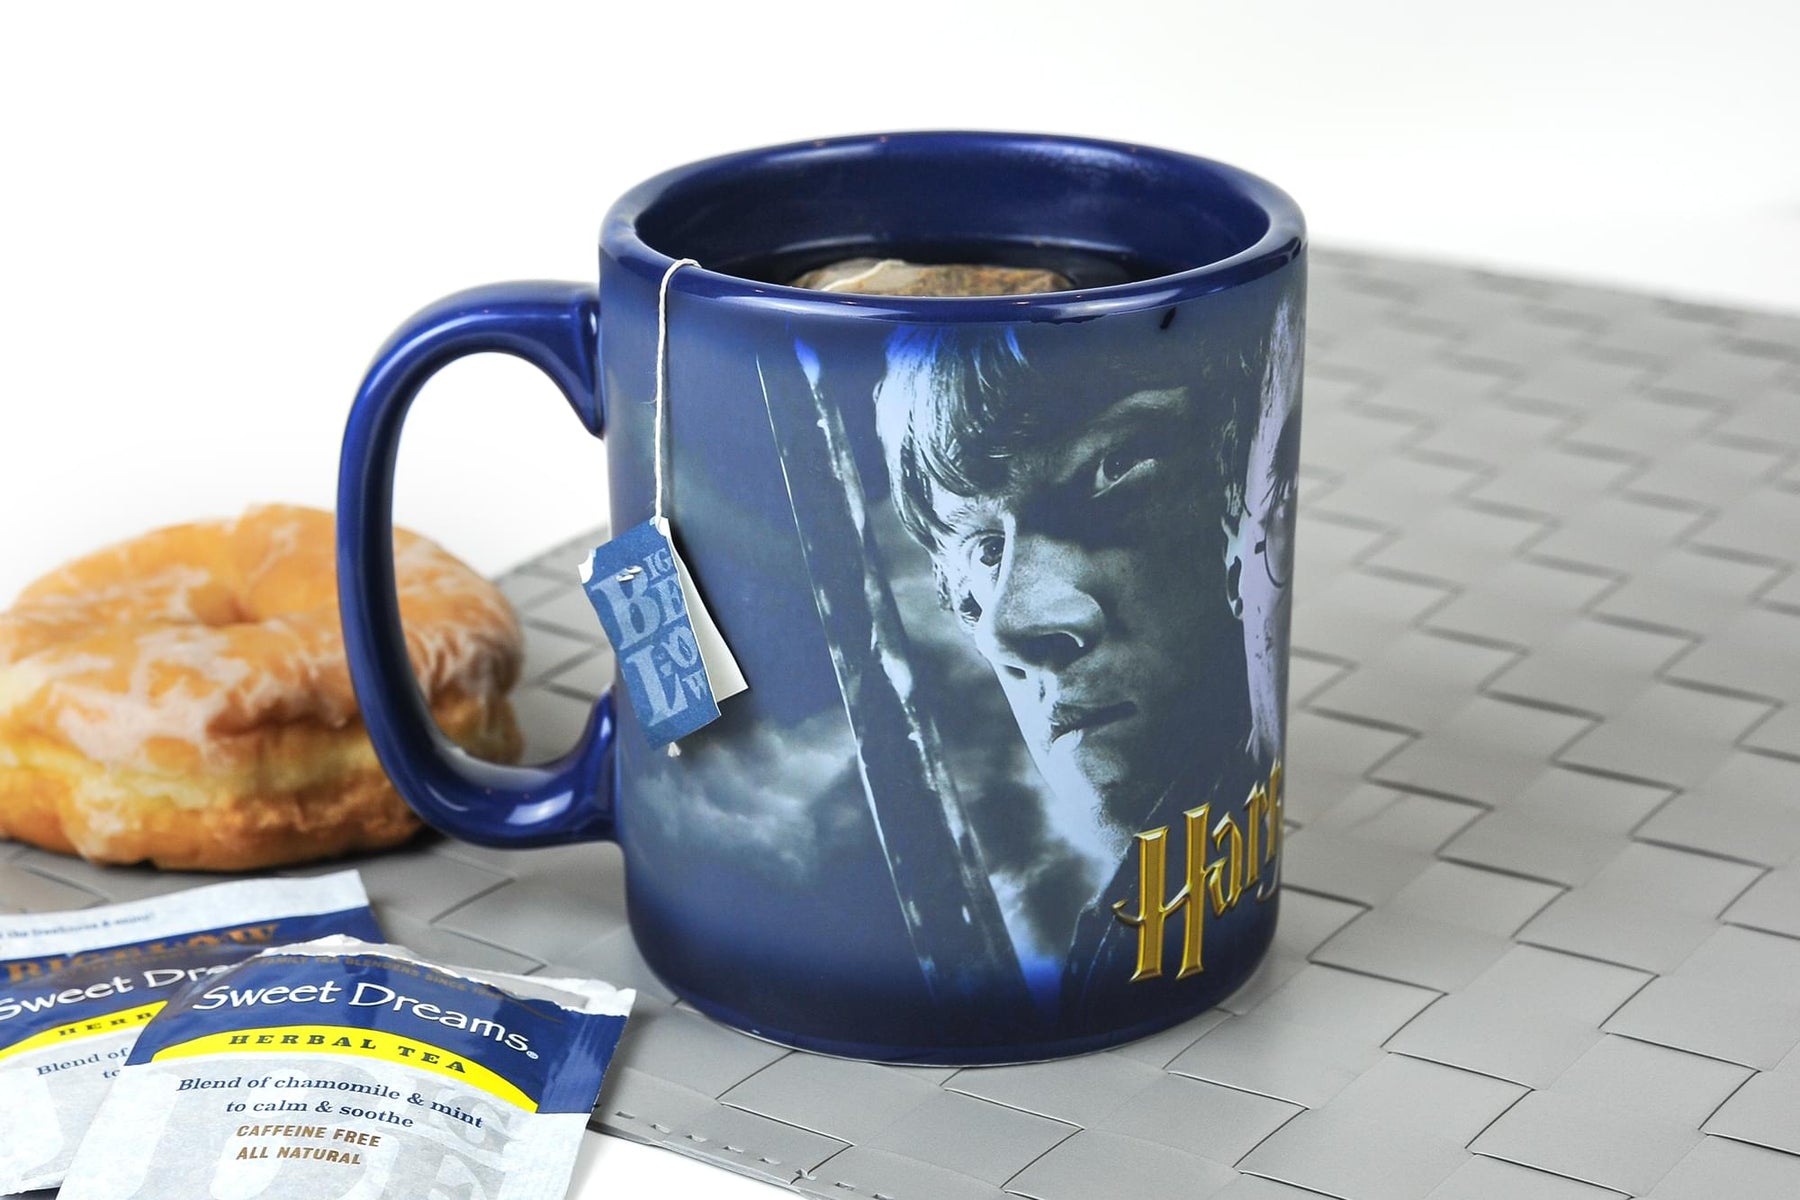 Harry Potter Trio 20-Oz Heat-Reveal Ceramic Mug